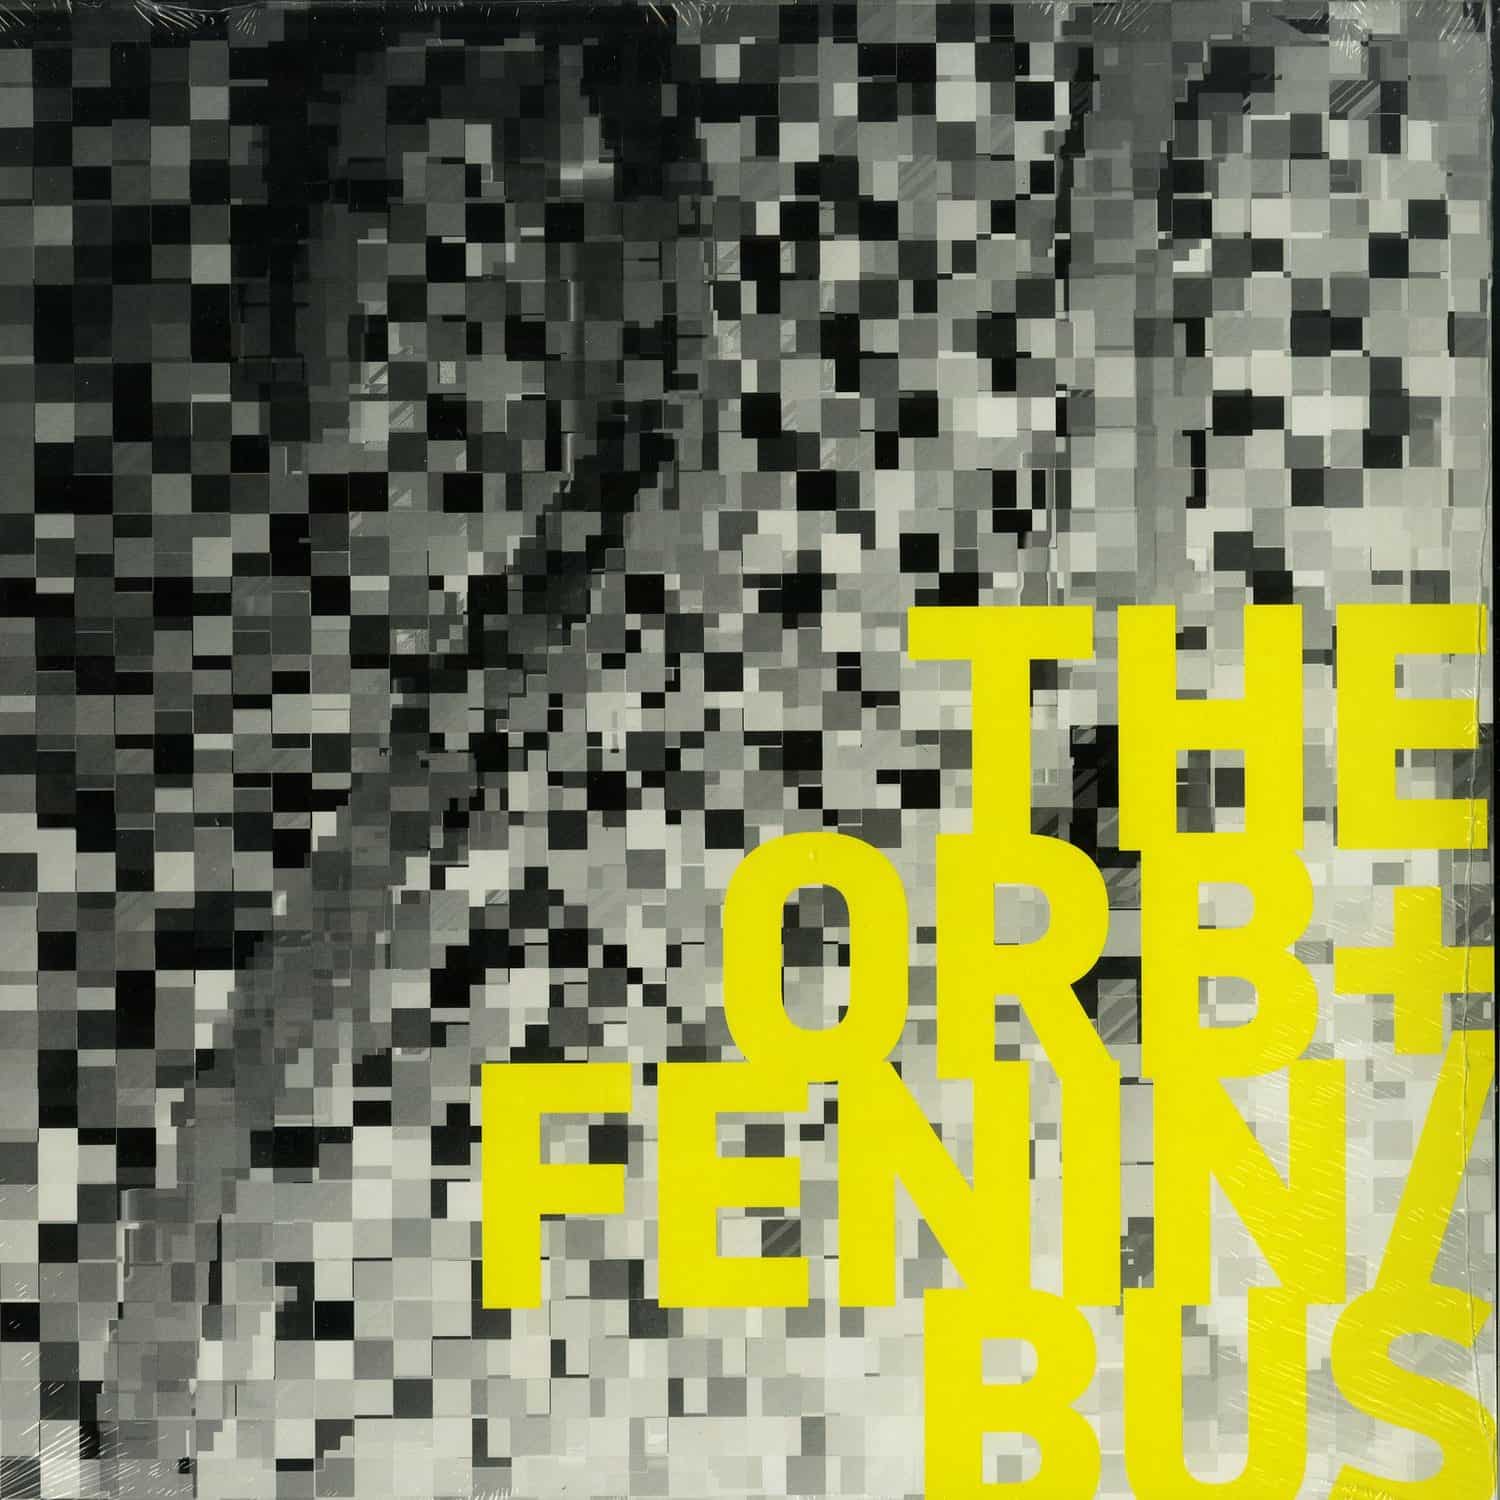 The Orb + Fenin / Bus - THE ORB + FENIN / BUS